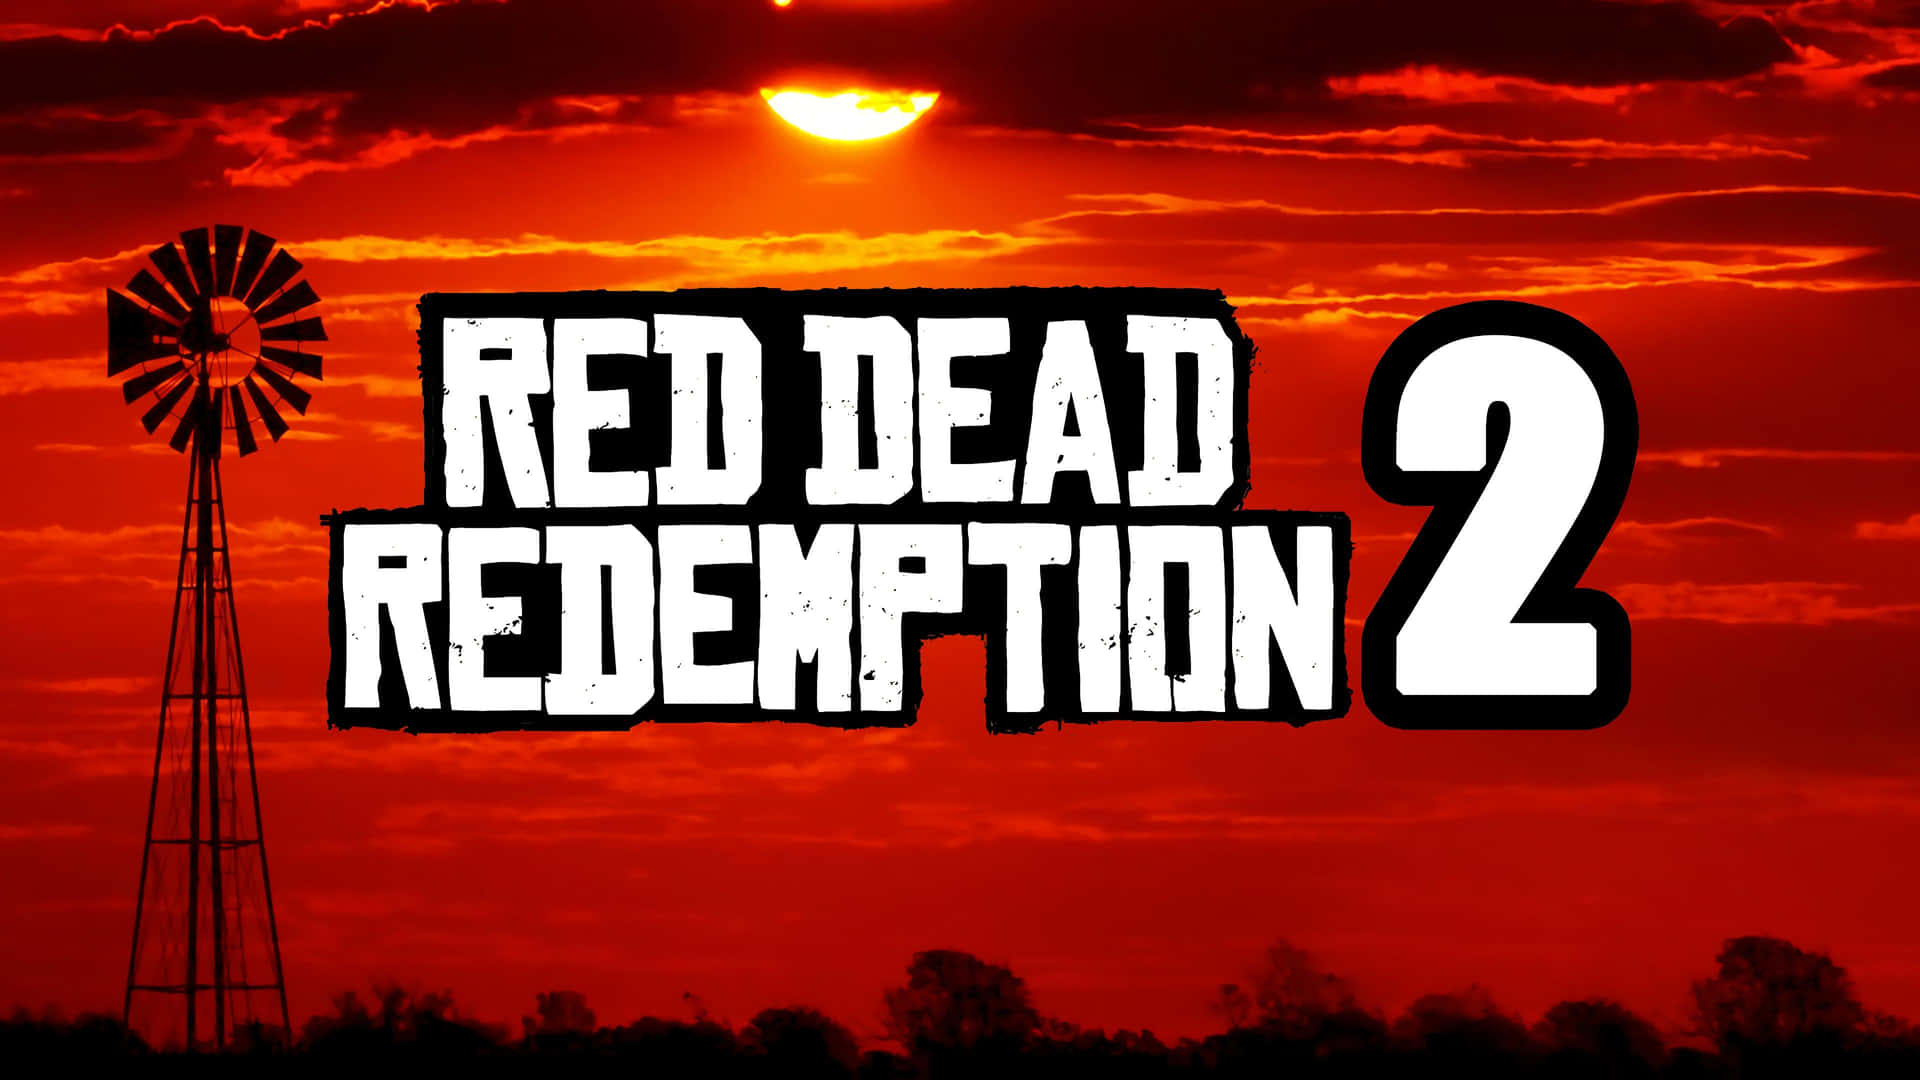 Ridiväg Mot Solnedgången Med Red Dead Redemption 2 Full Hd Som Bakgrundsbild På Din Dator Eller Mobil. Wallpaper